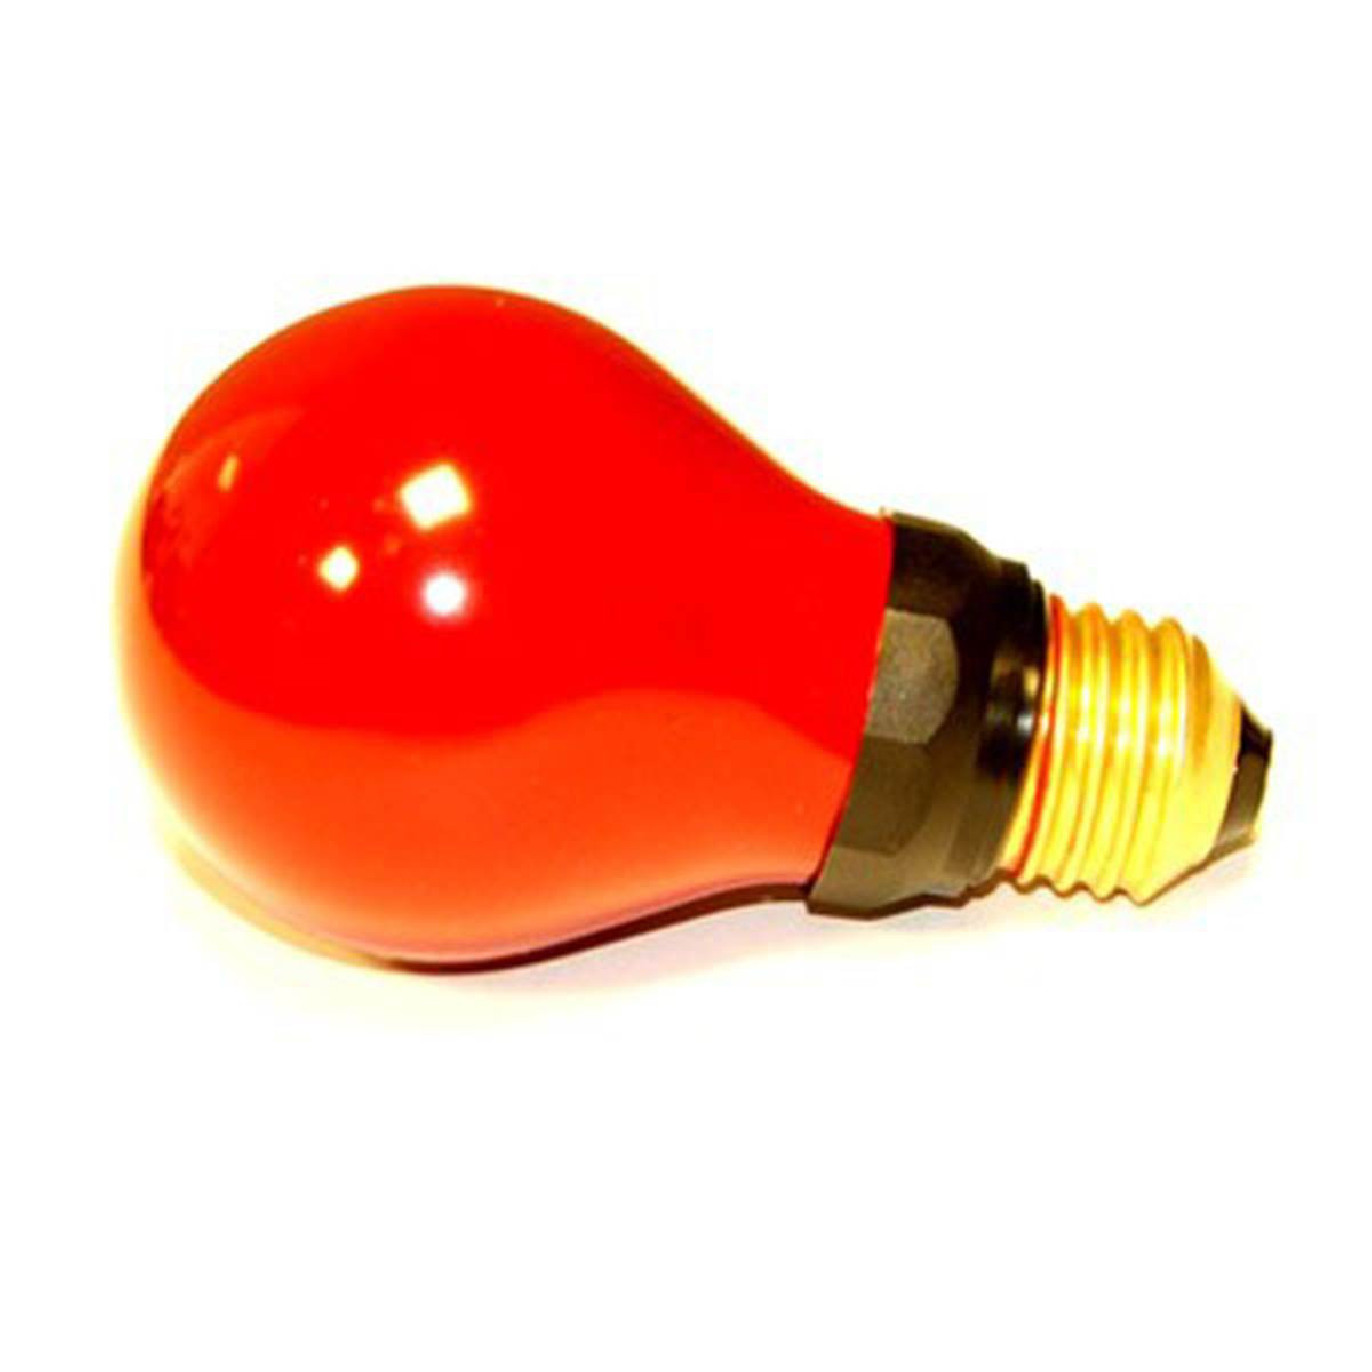 Ampoule à filament coloré rouge - EMMET RED